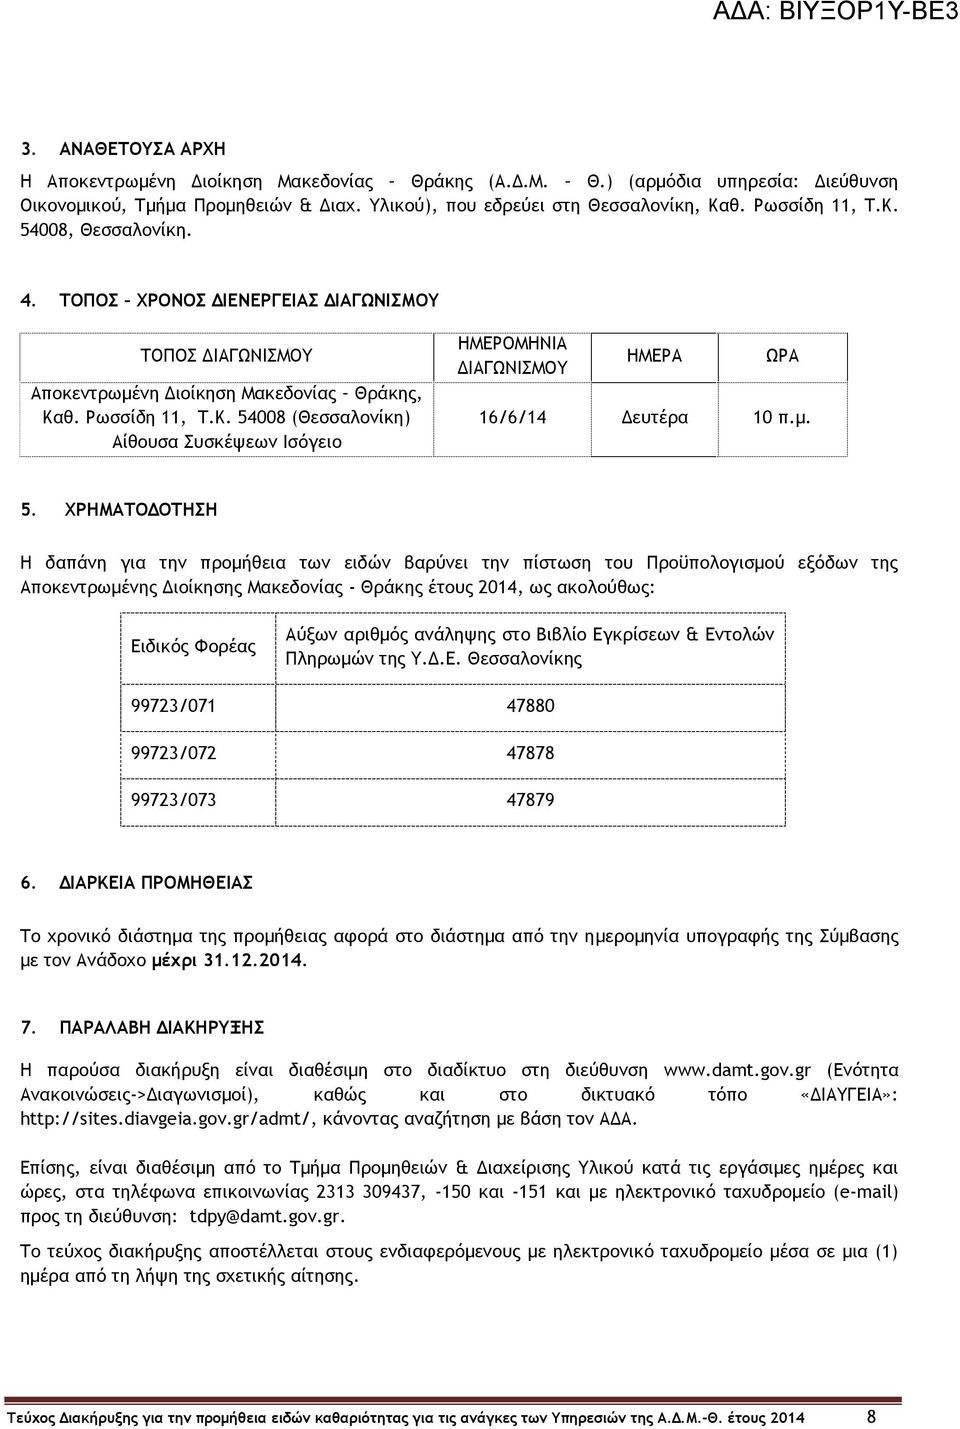 μ. 5. ΧΡΗΜΑΤΟΔΟΤΗΣΗ Η δαπάνη για την προμήθεια των ειδών βαρύνει την πίστωση του Προϋπολογισμού εξόδων της Αποκεντρωμένης Διοίκησης Μακεδονίας - Θράκης έτους 2014, ως ακολούθως: Ειδικός Φορέας Αύξων